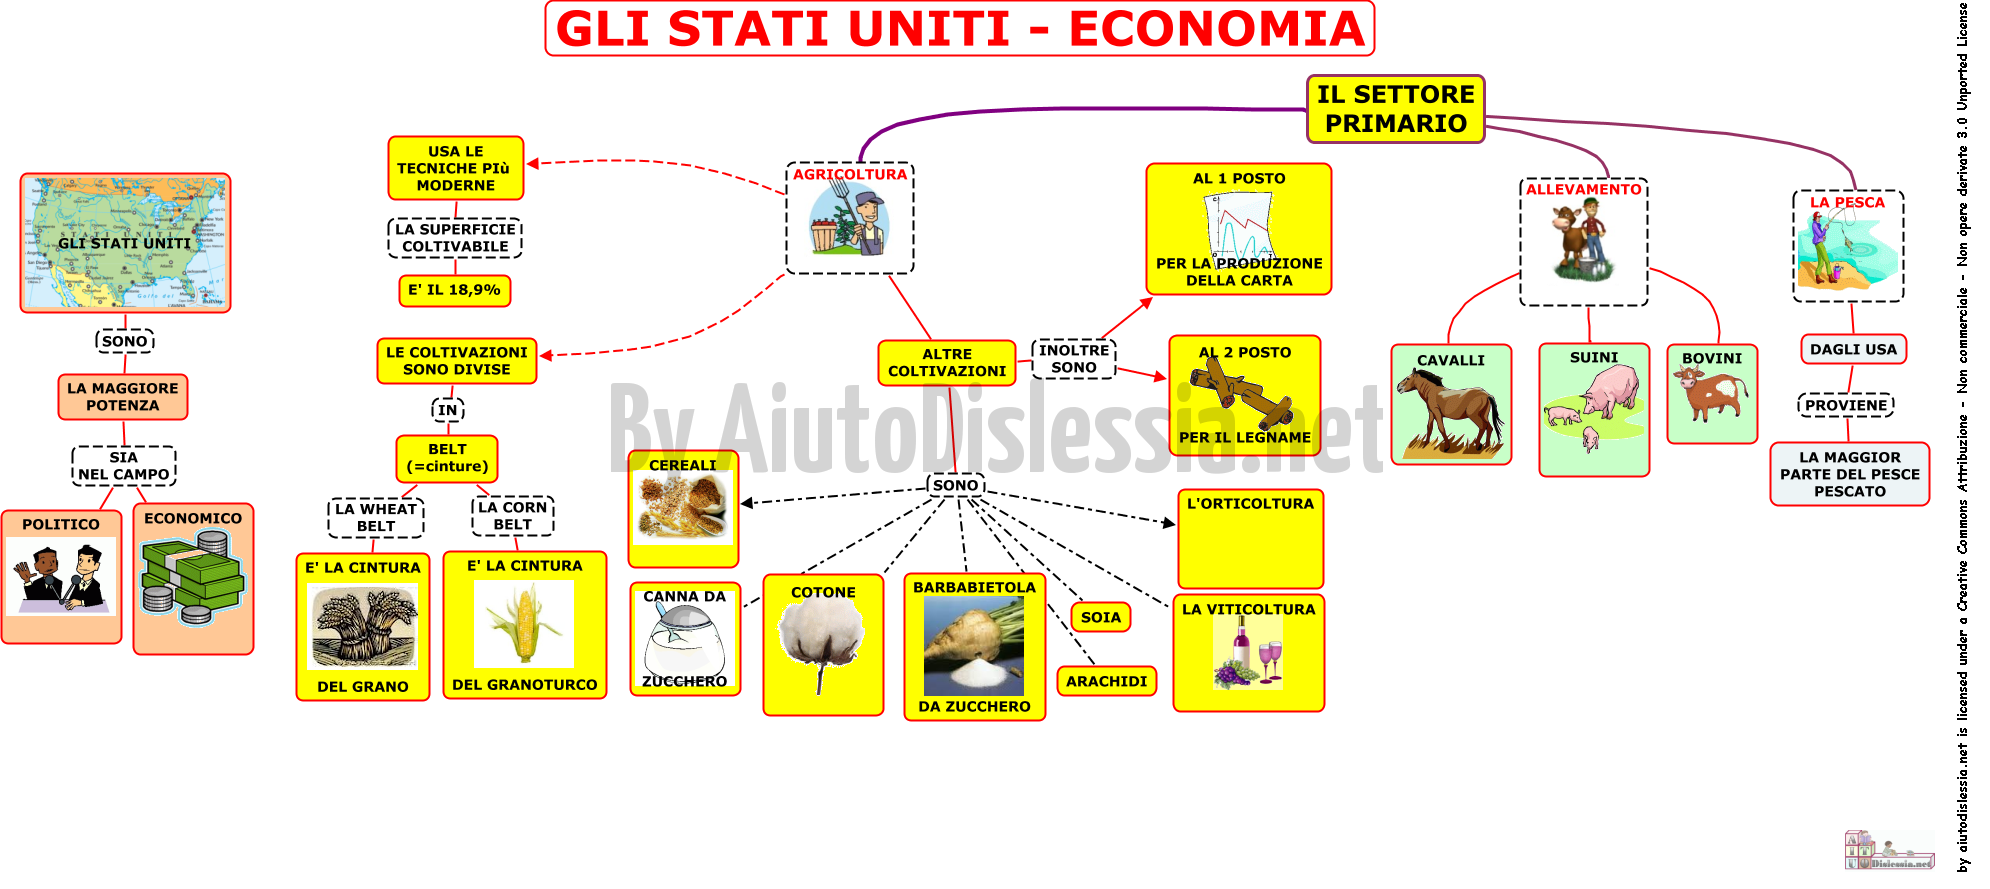 05-stati-uniti-economia